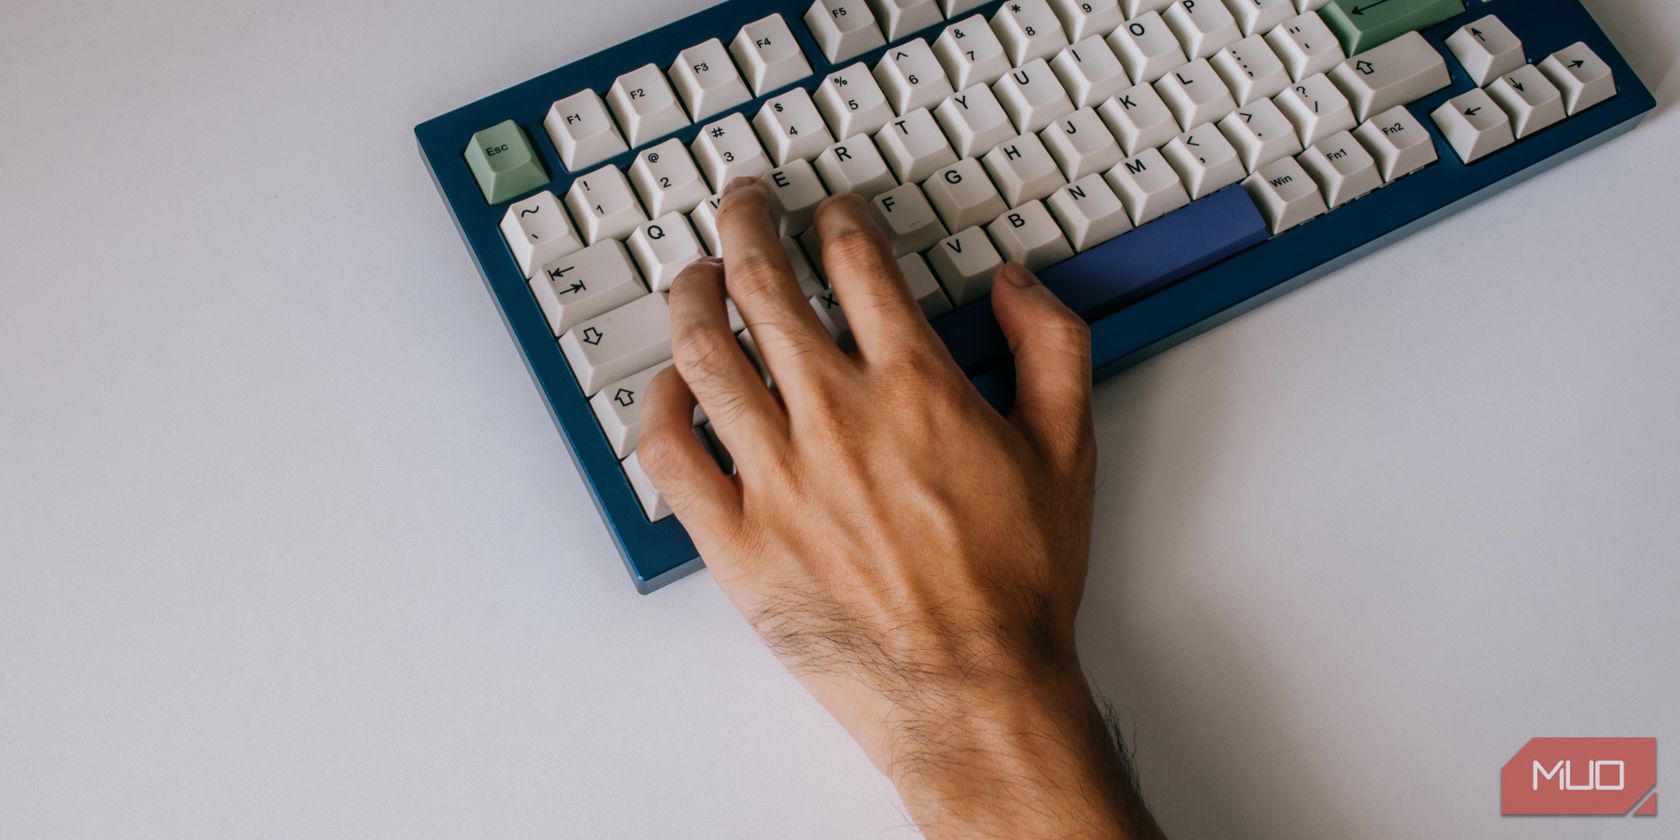 pulsos retos ao usar o teclado